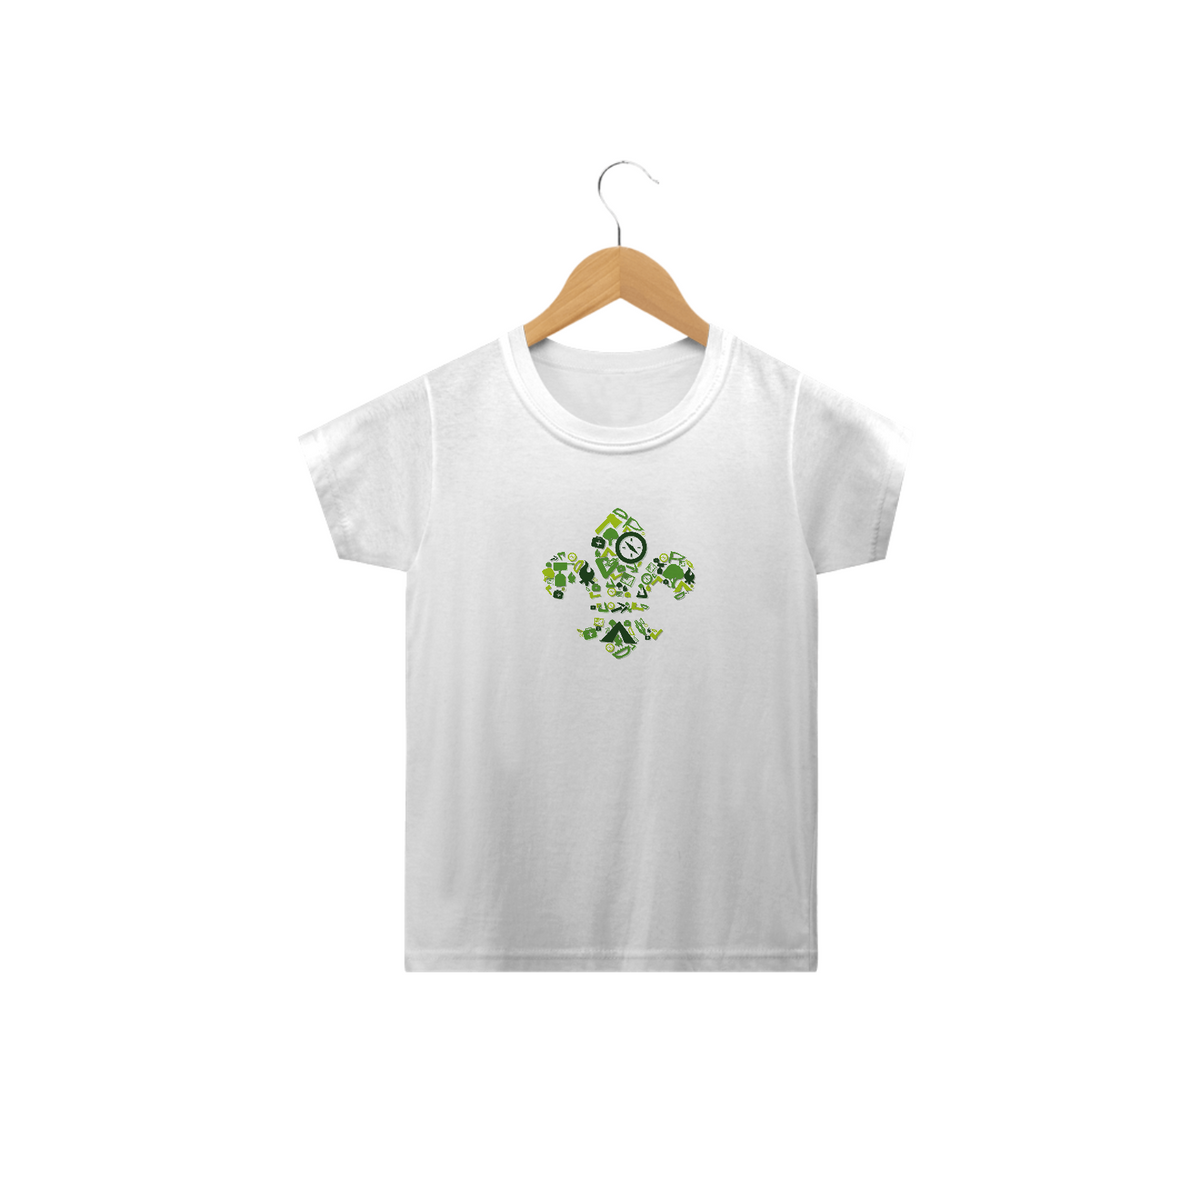 Nome do produto: Camiseta Infantil Flor de lis